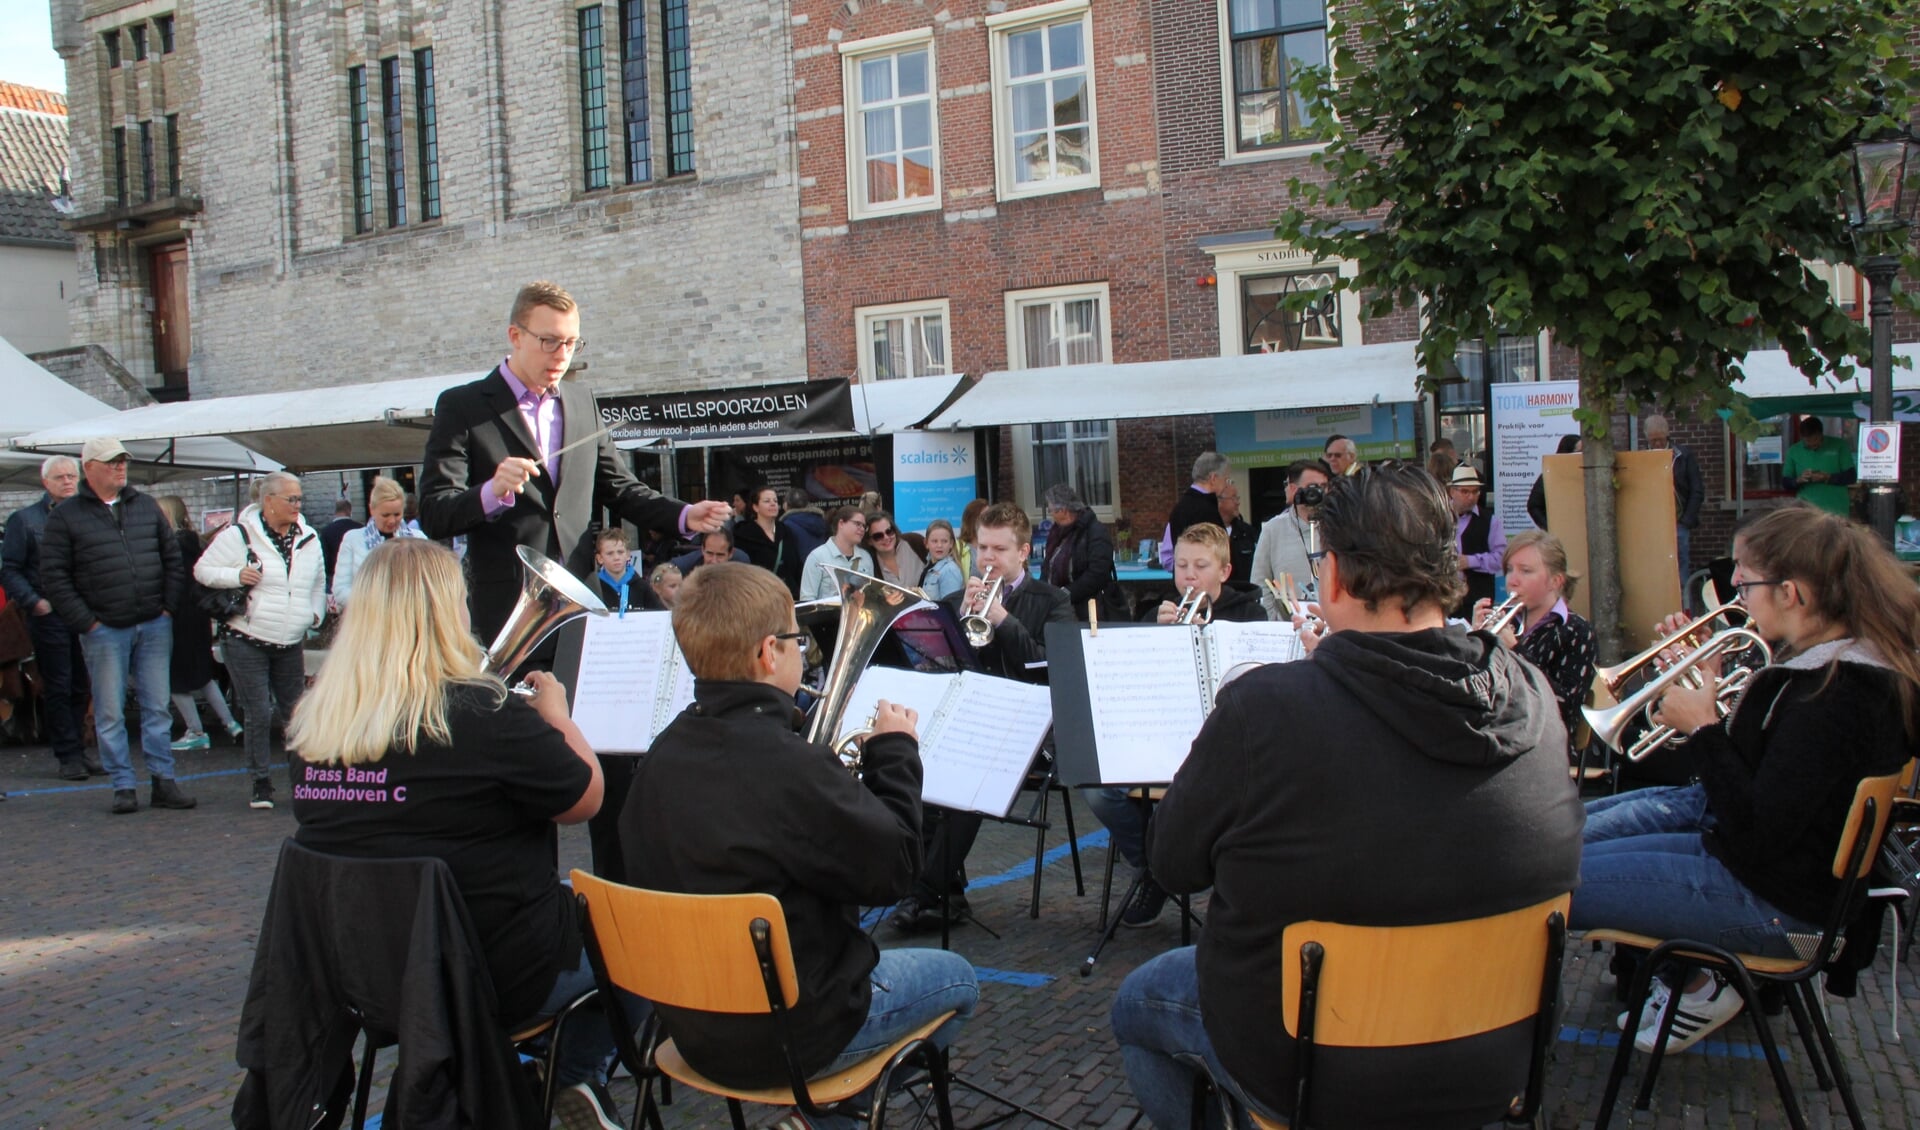 BrassBand Schoonhoven C speelt voor de bezoekers van Bartholomeusdag in 2018.